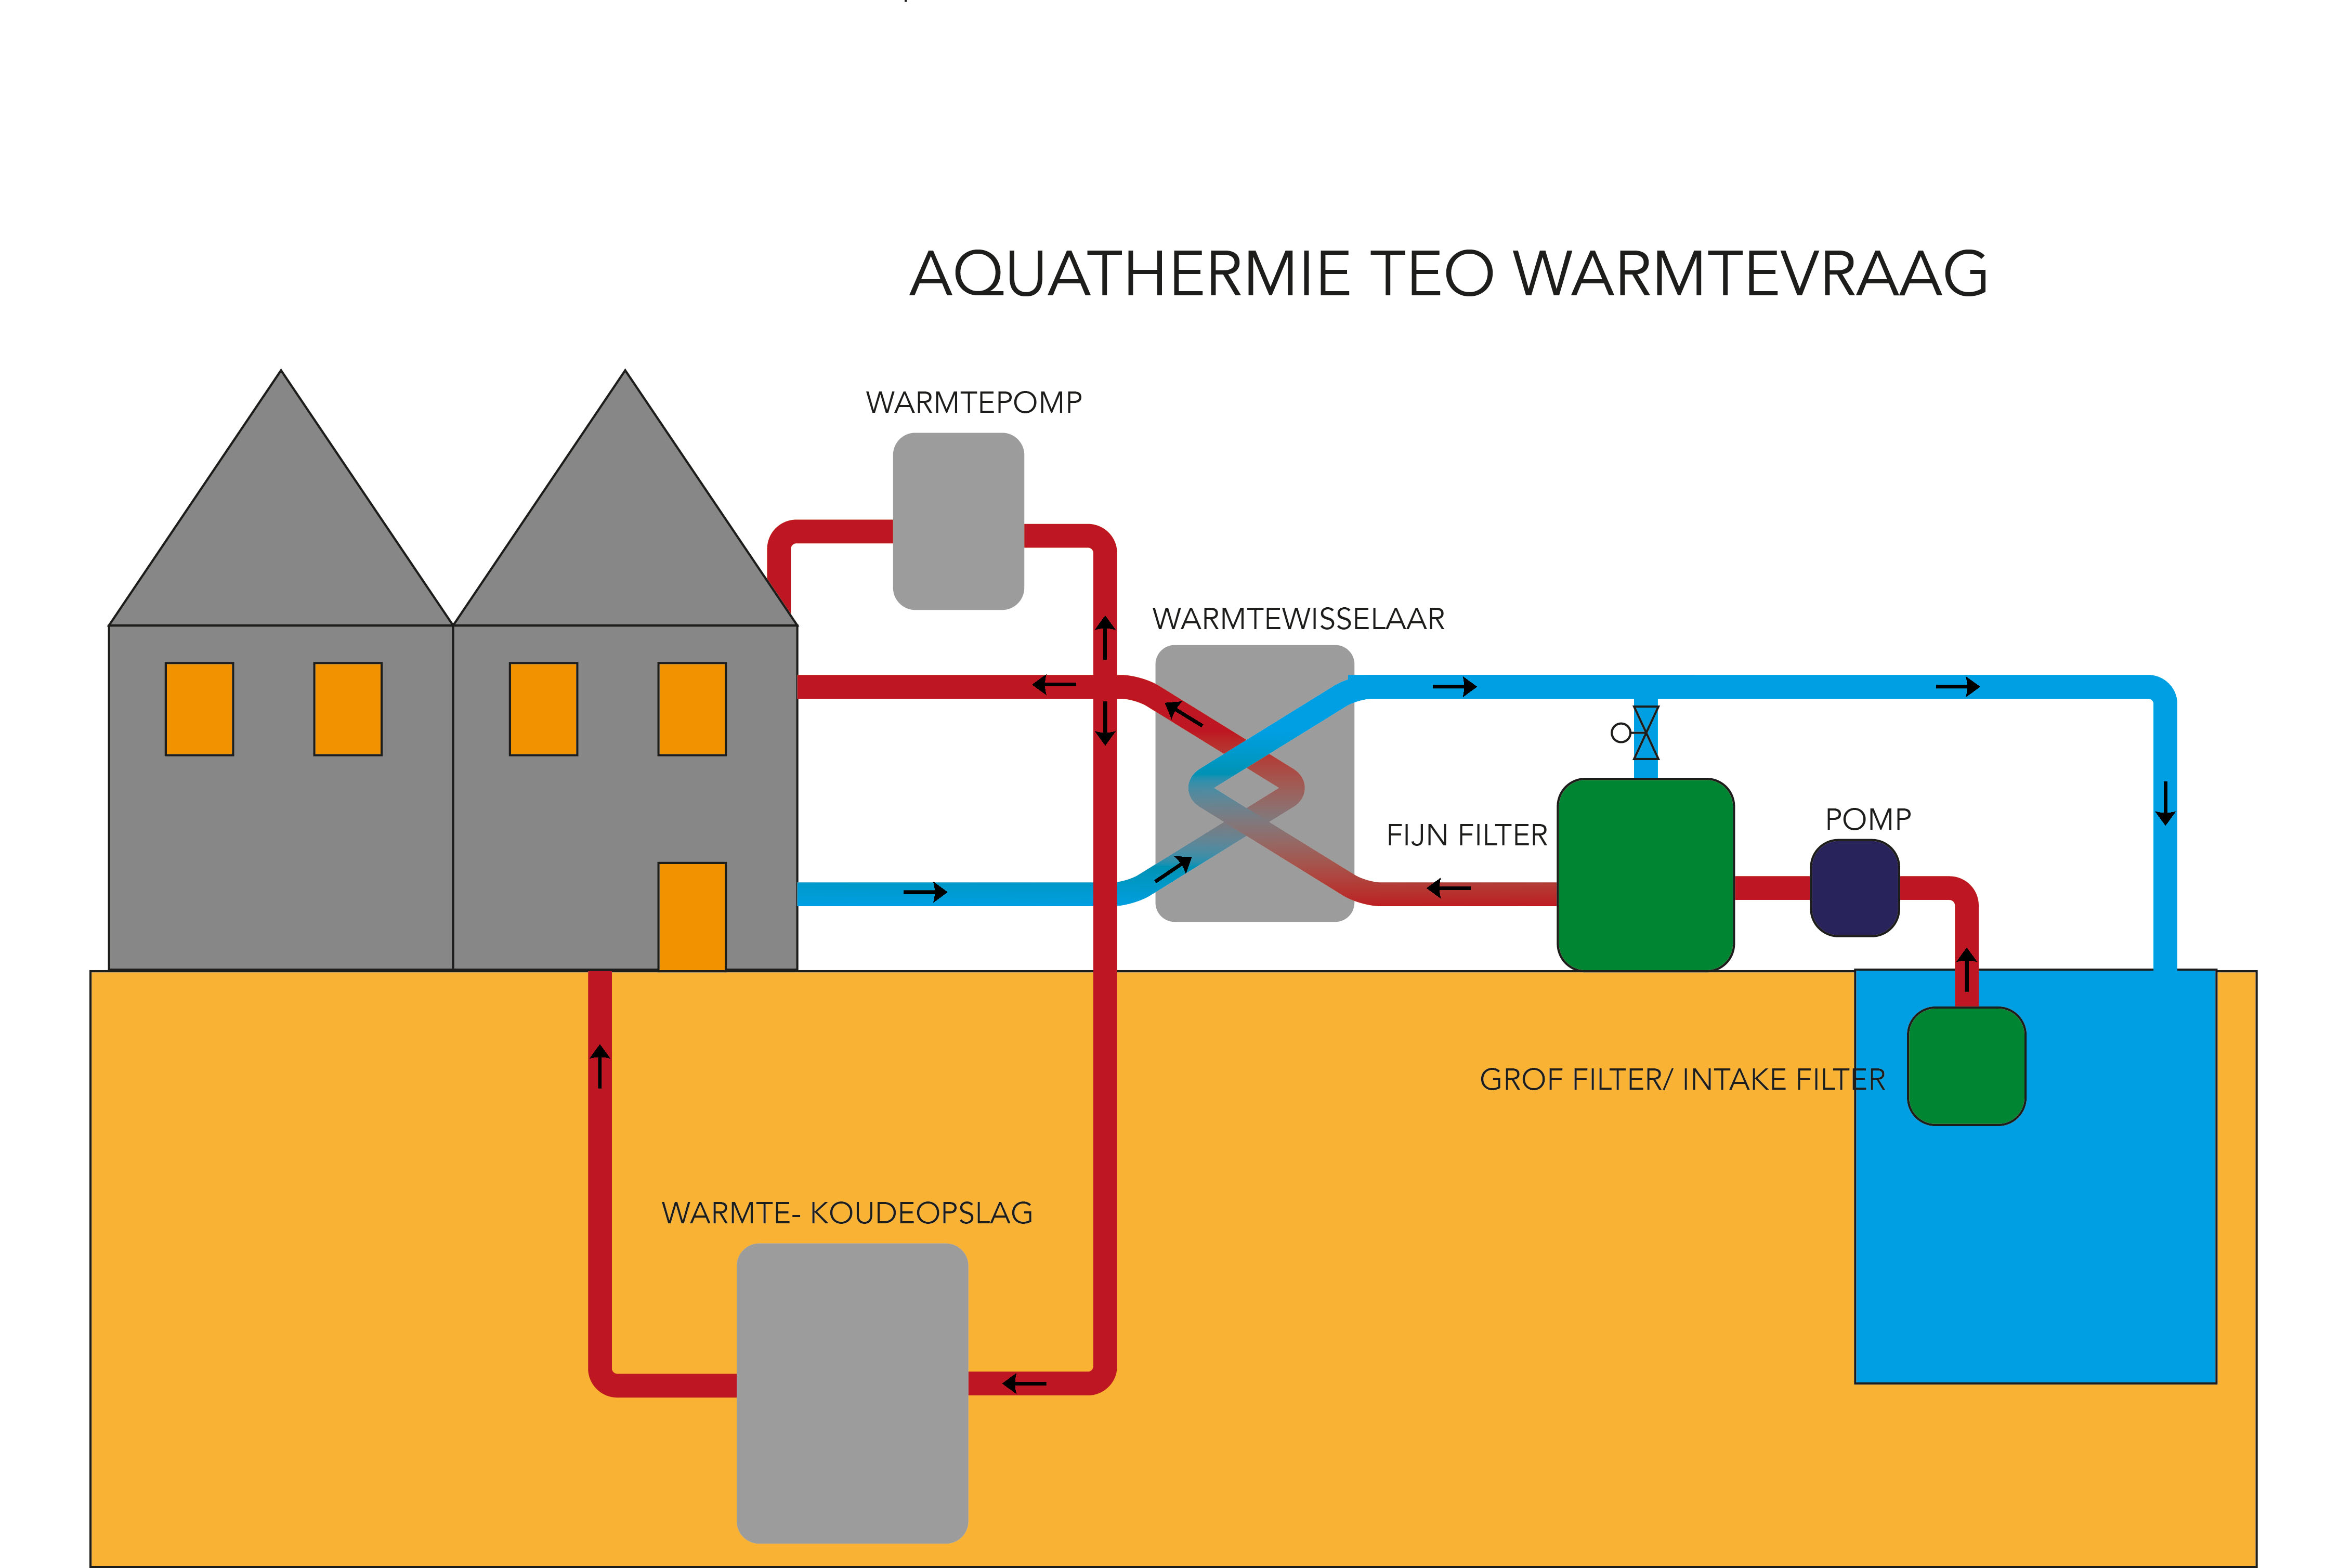 Aquathermie TEO warmtevraag